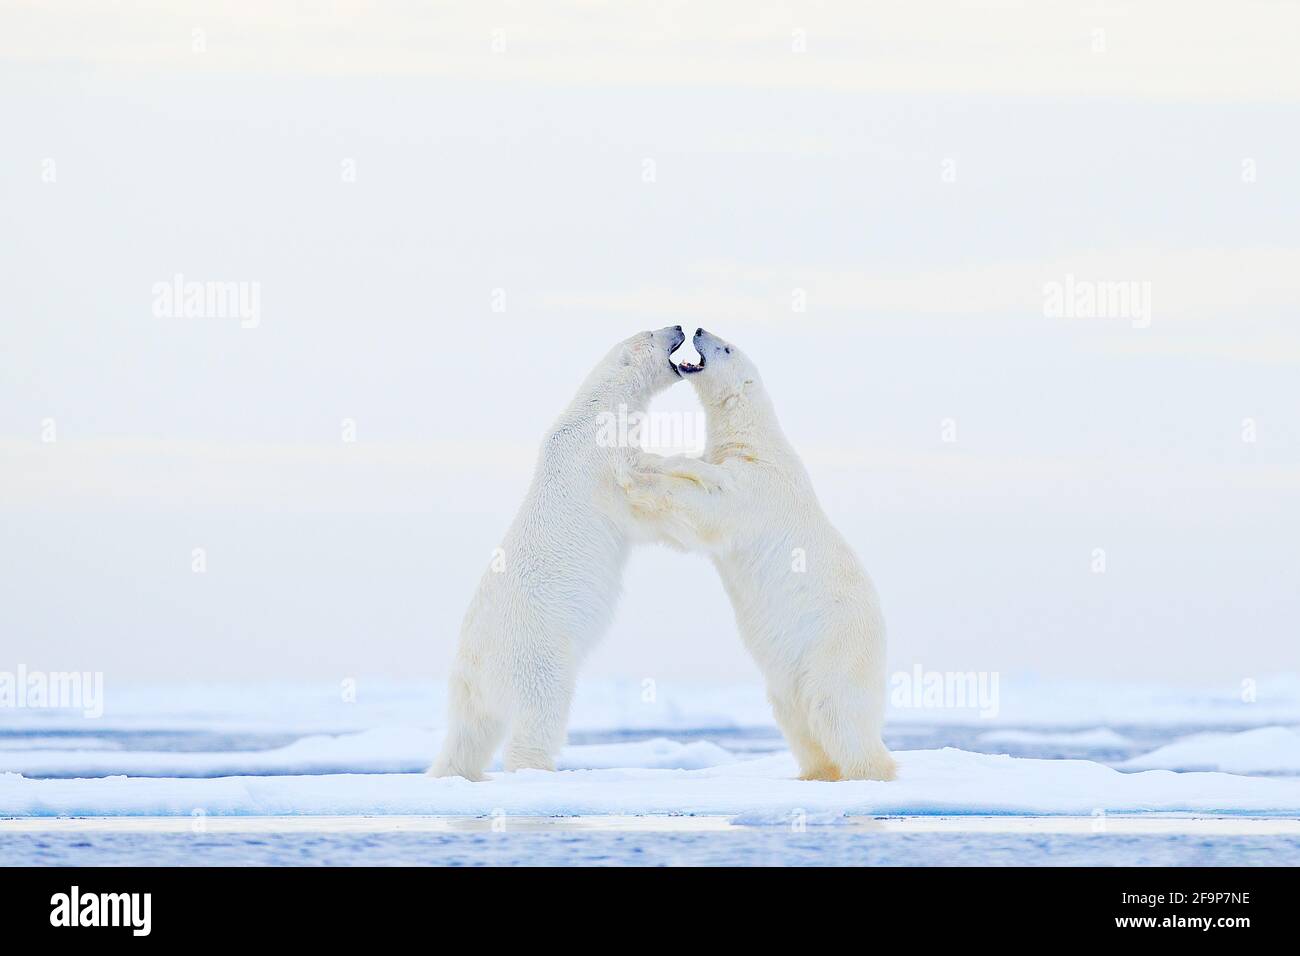 Eisbär tanzt auf dem Eis. Zwei Eisbären lieben auf treibendem Eis mit Schnee, weiße Tiere in der Natur Lebensraum, Svalbard, Norwegen. Spielende Tiere Stockfoto